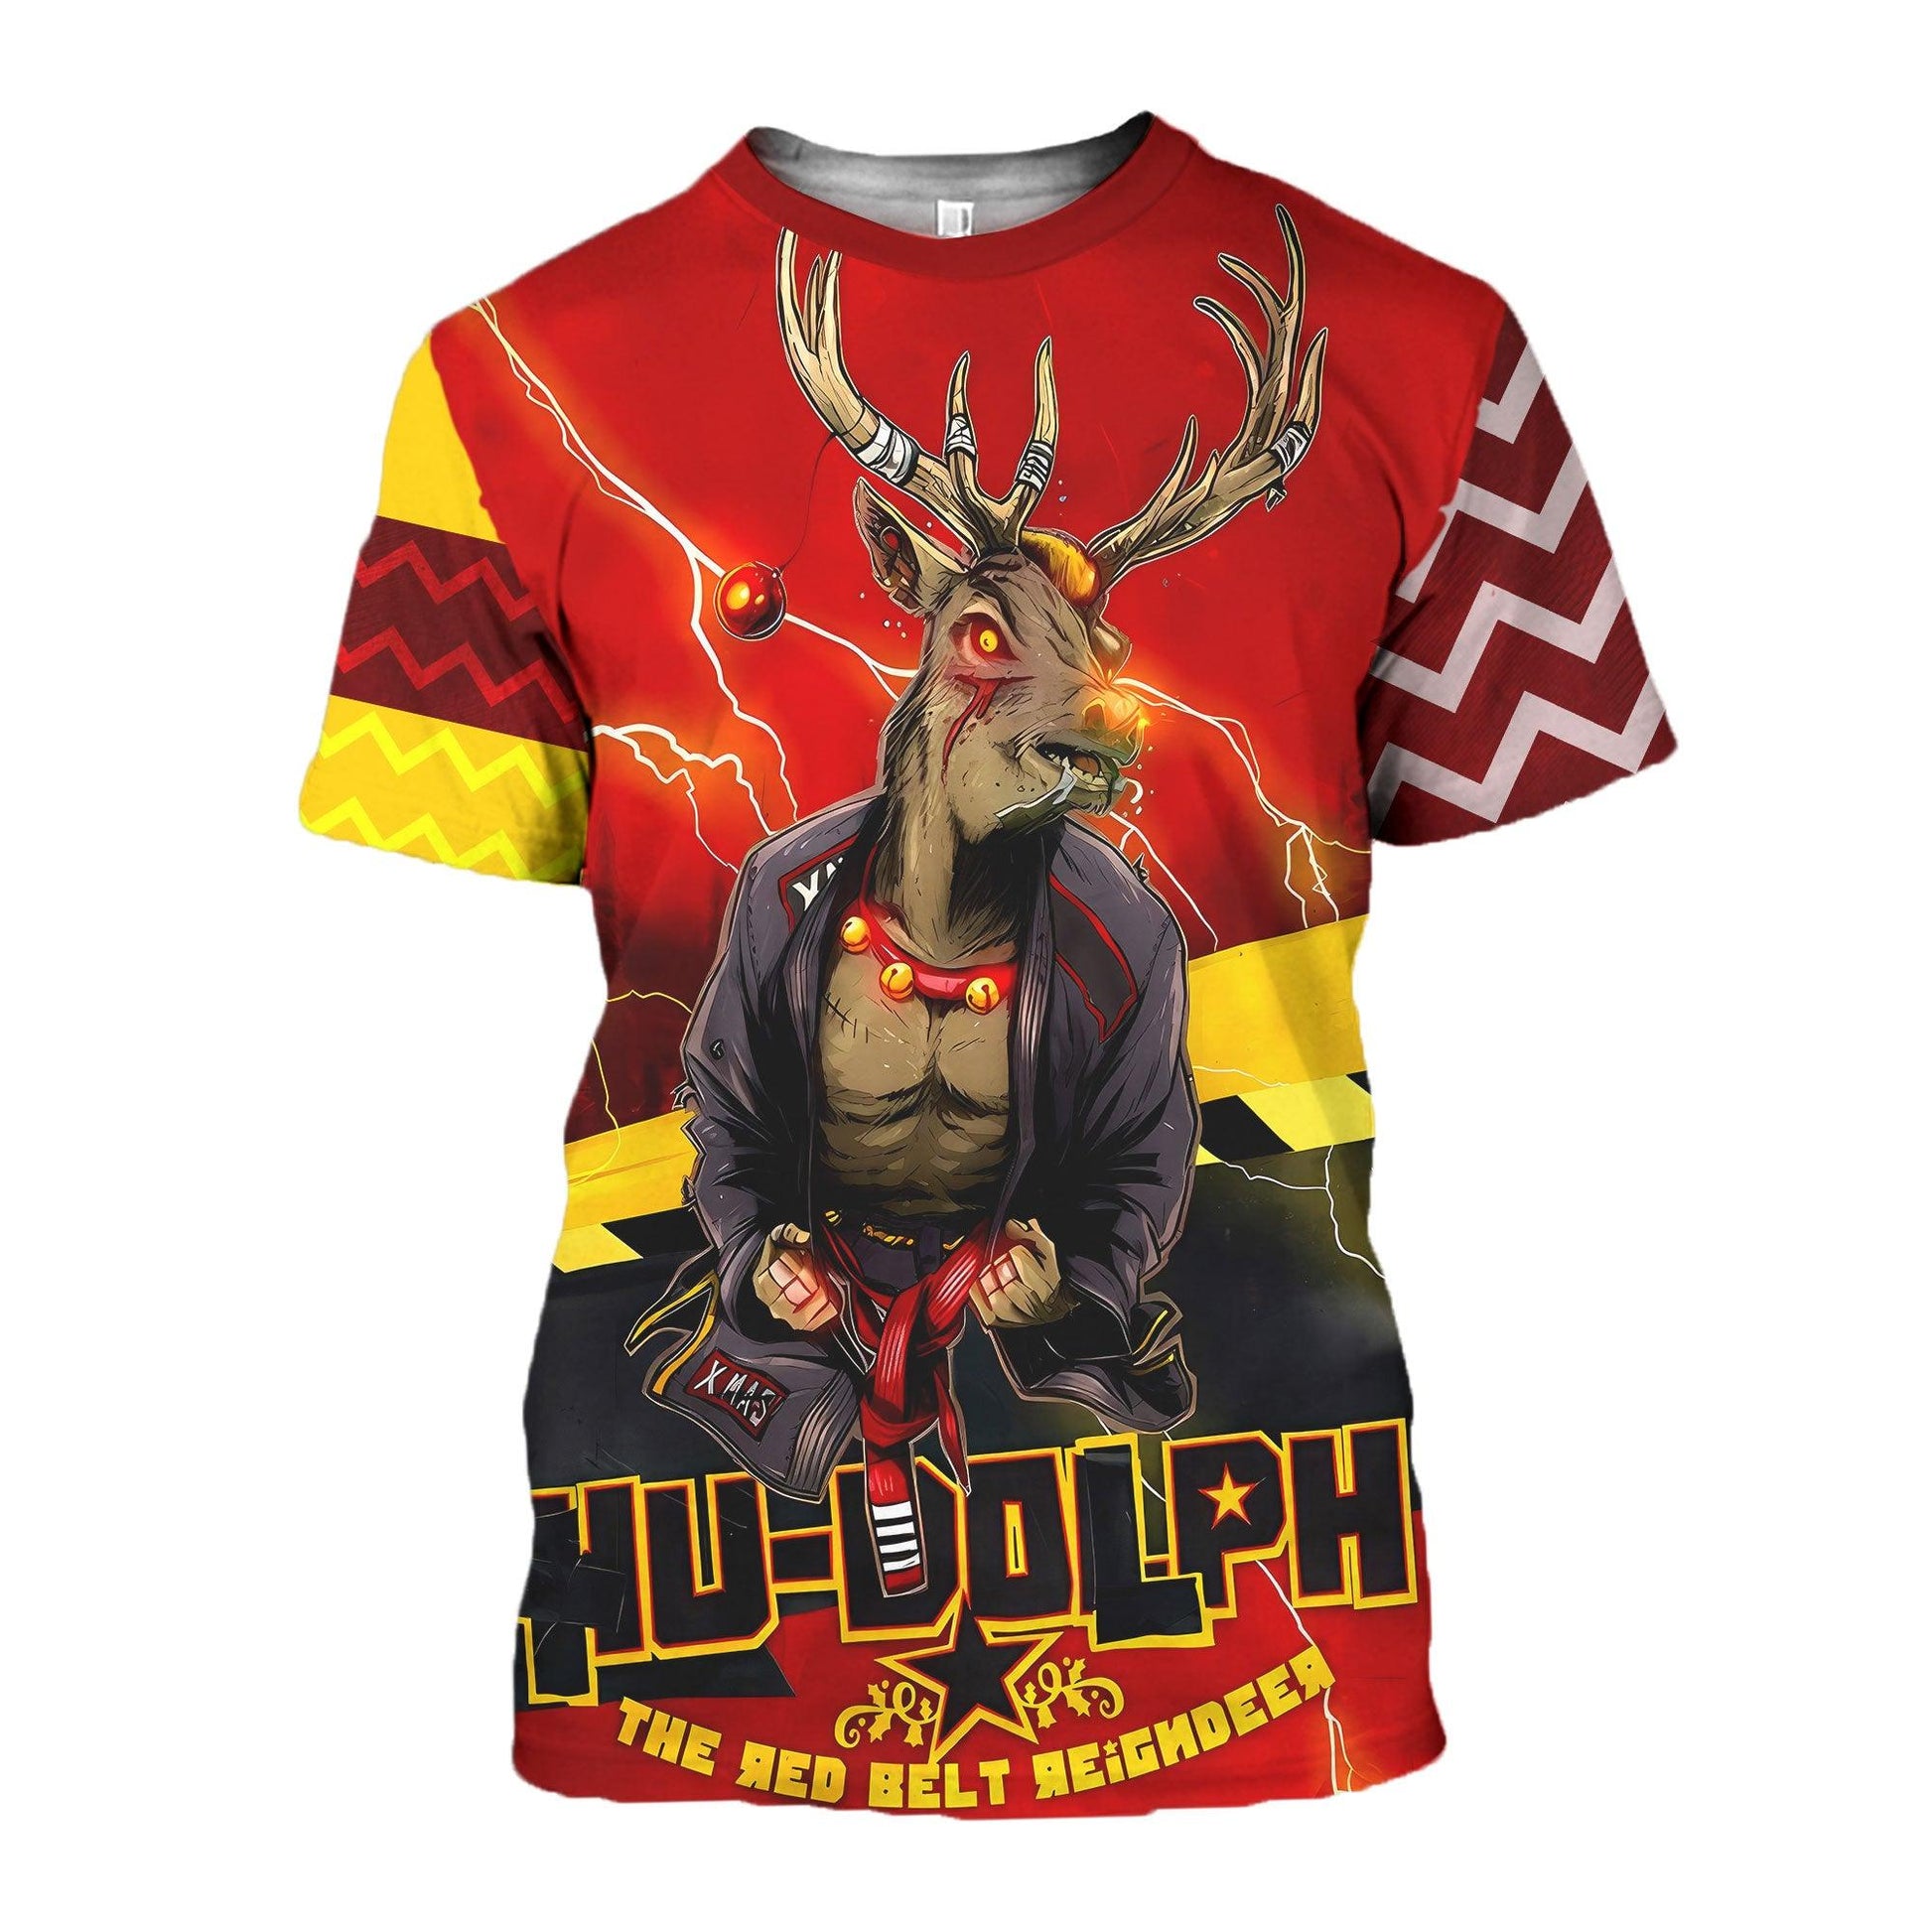 Hudolph The Red Belt Reindeer T-shirt